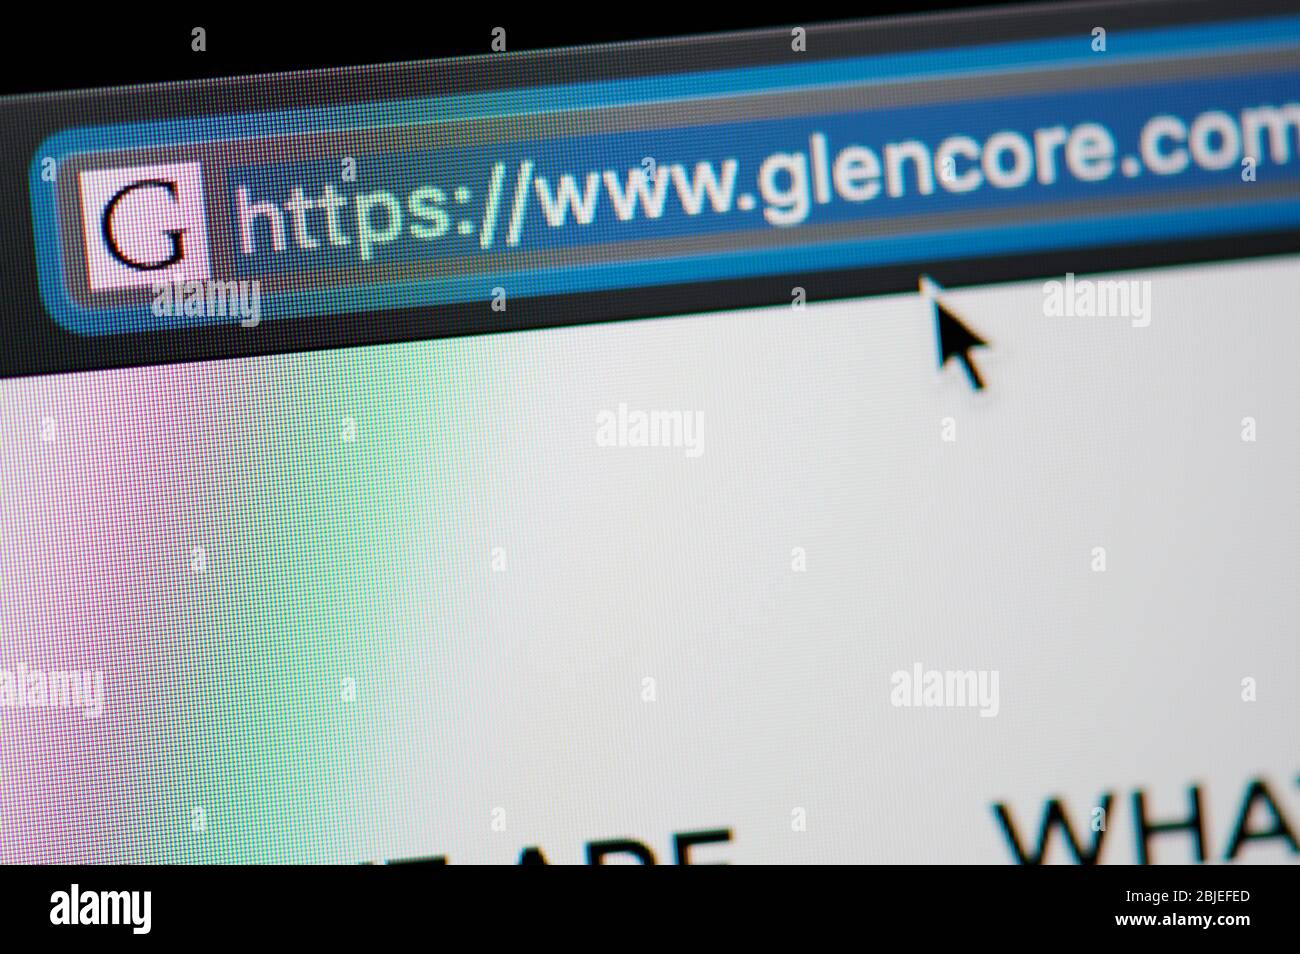 New-York , Estados Unidos - 29 de abril de 2020:Glencore URL link Dirección sitio web cerrar vista en pantalla portátil Foto de stock